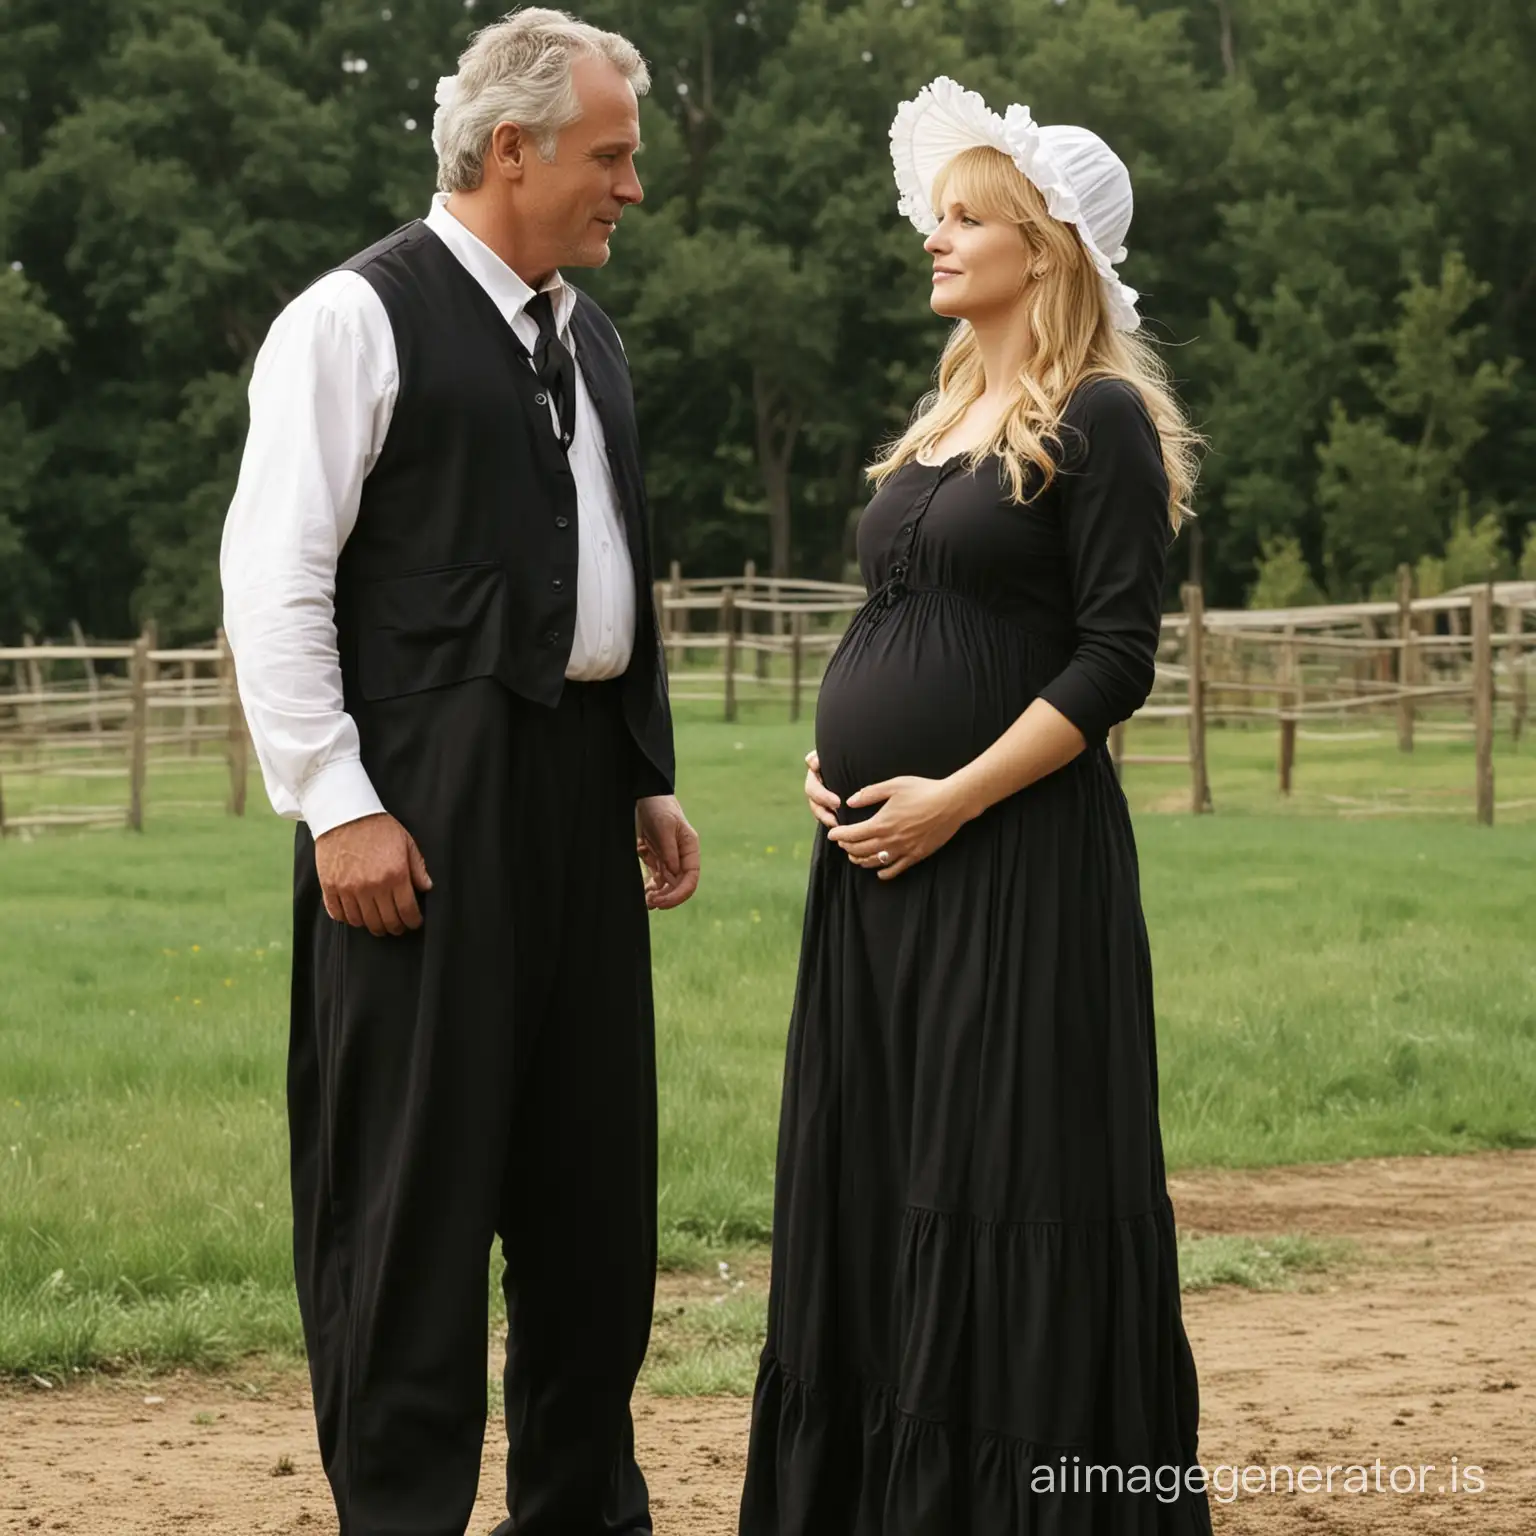 SG1-Major-Samantha-Carter-in-Amish-Maternity-Dress-Kissing-New-Husband